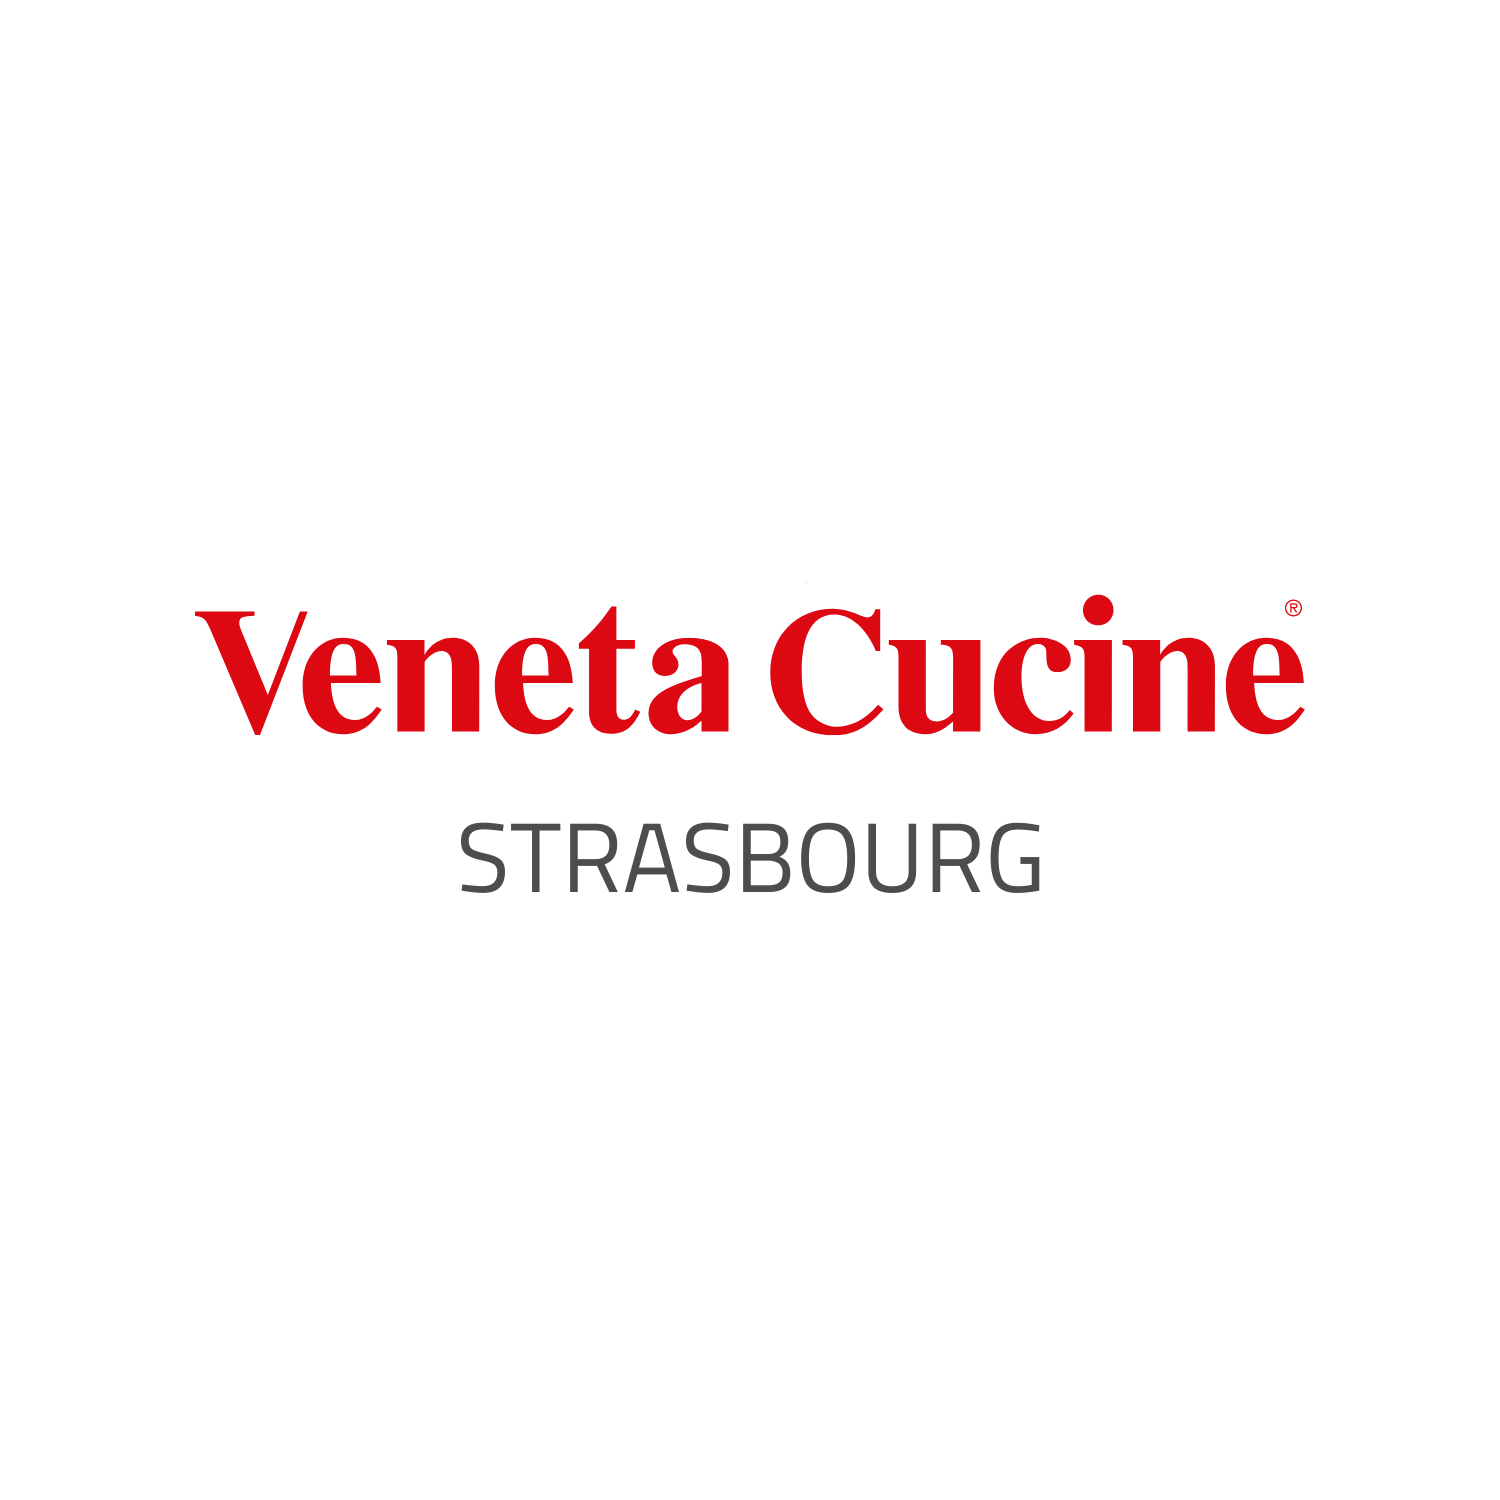 Veneta Cucine Strasbourg